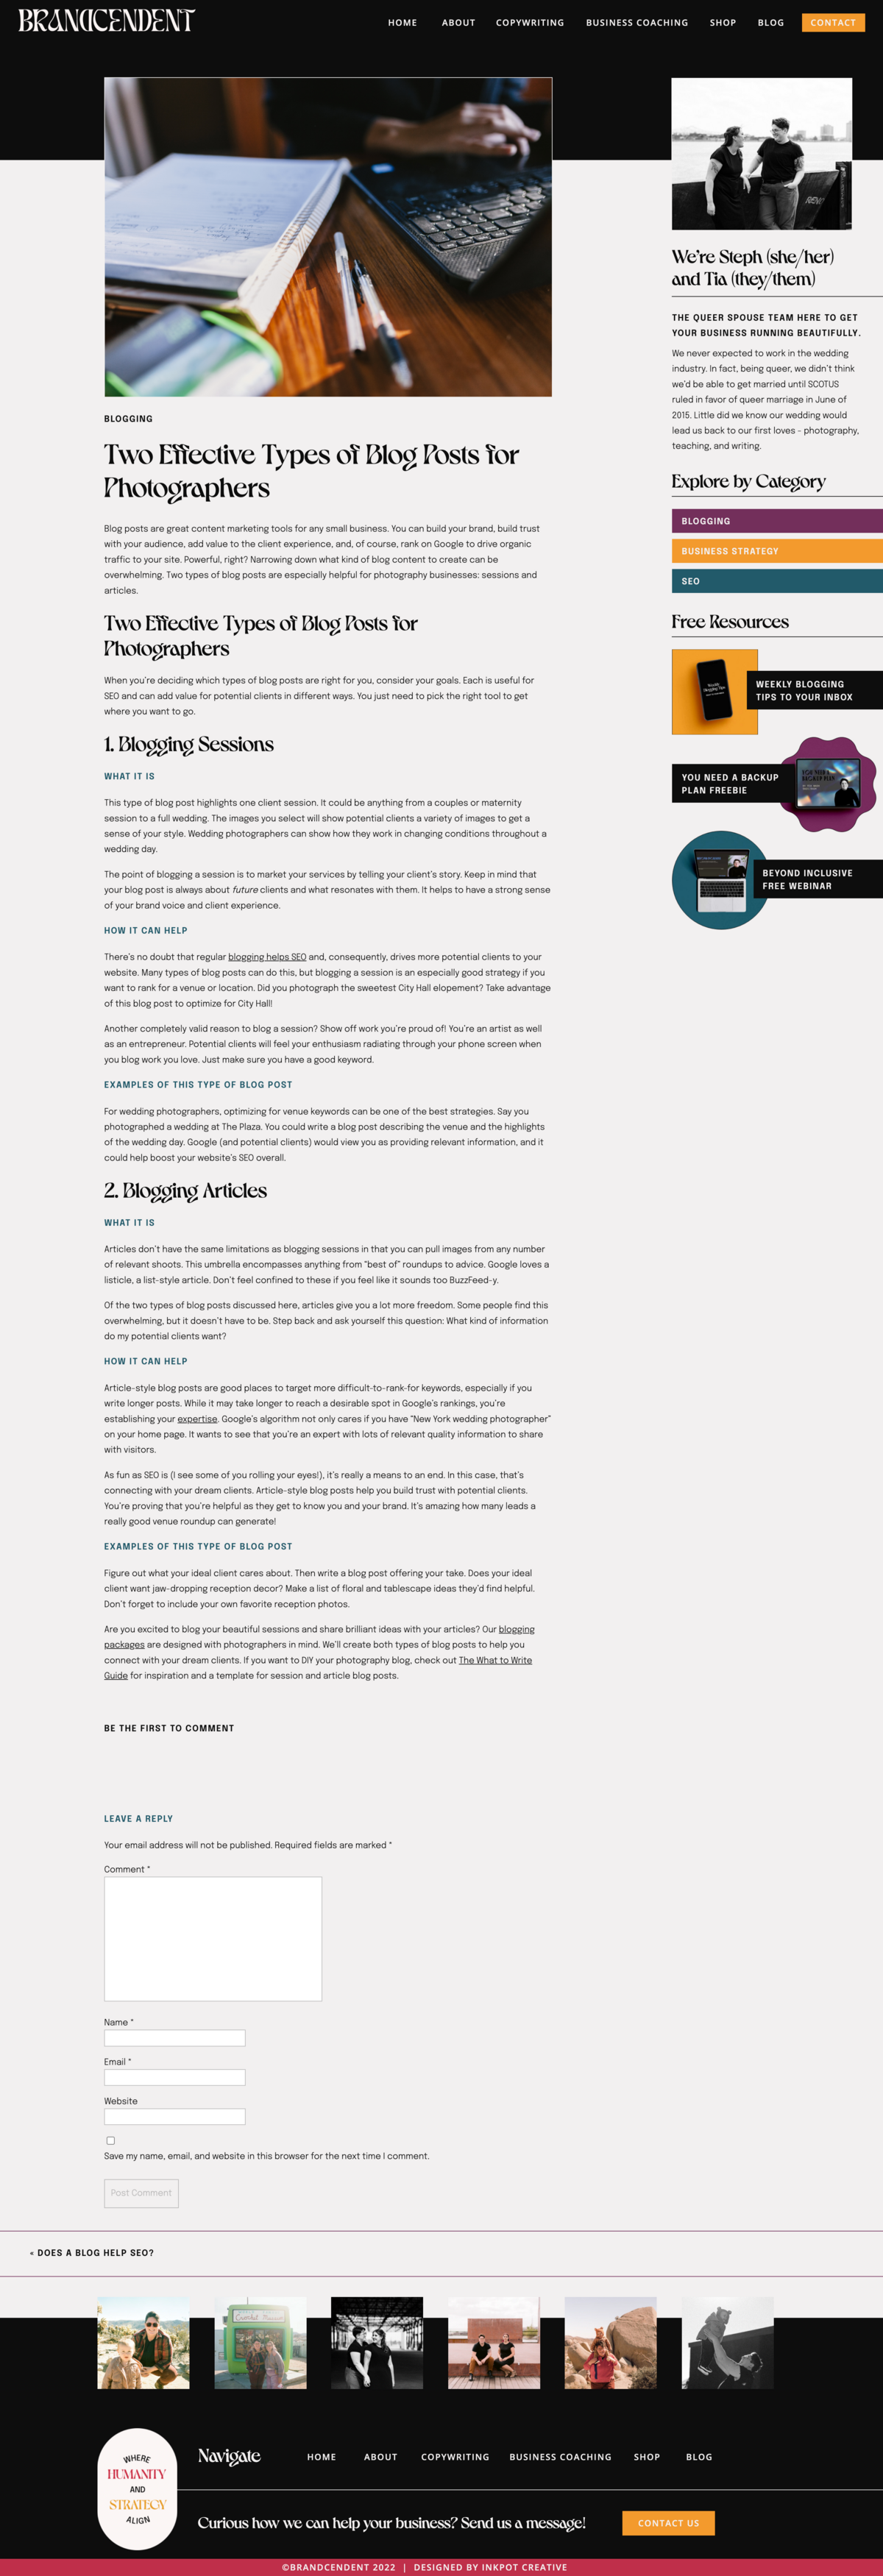 screenshot of full individual blog post page